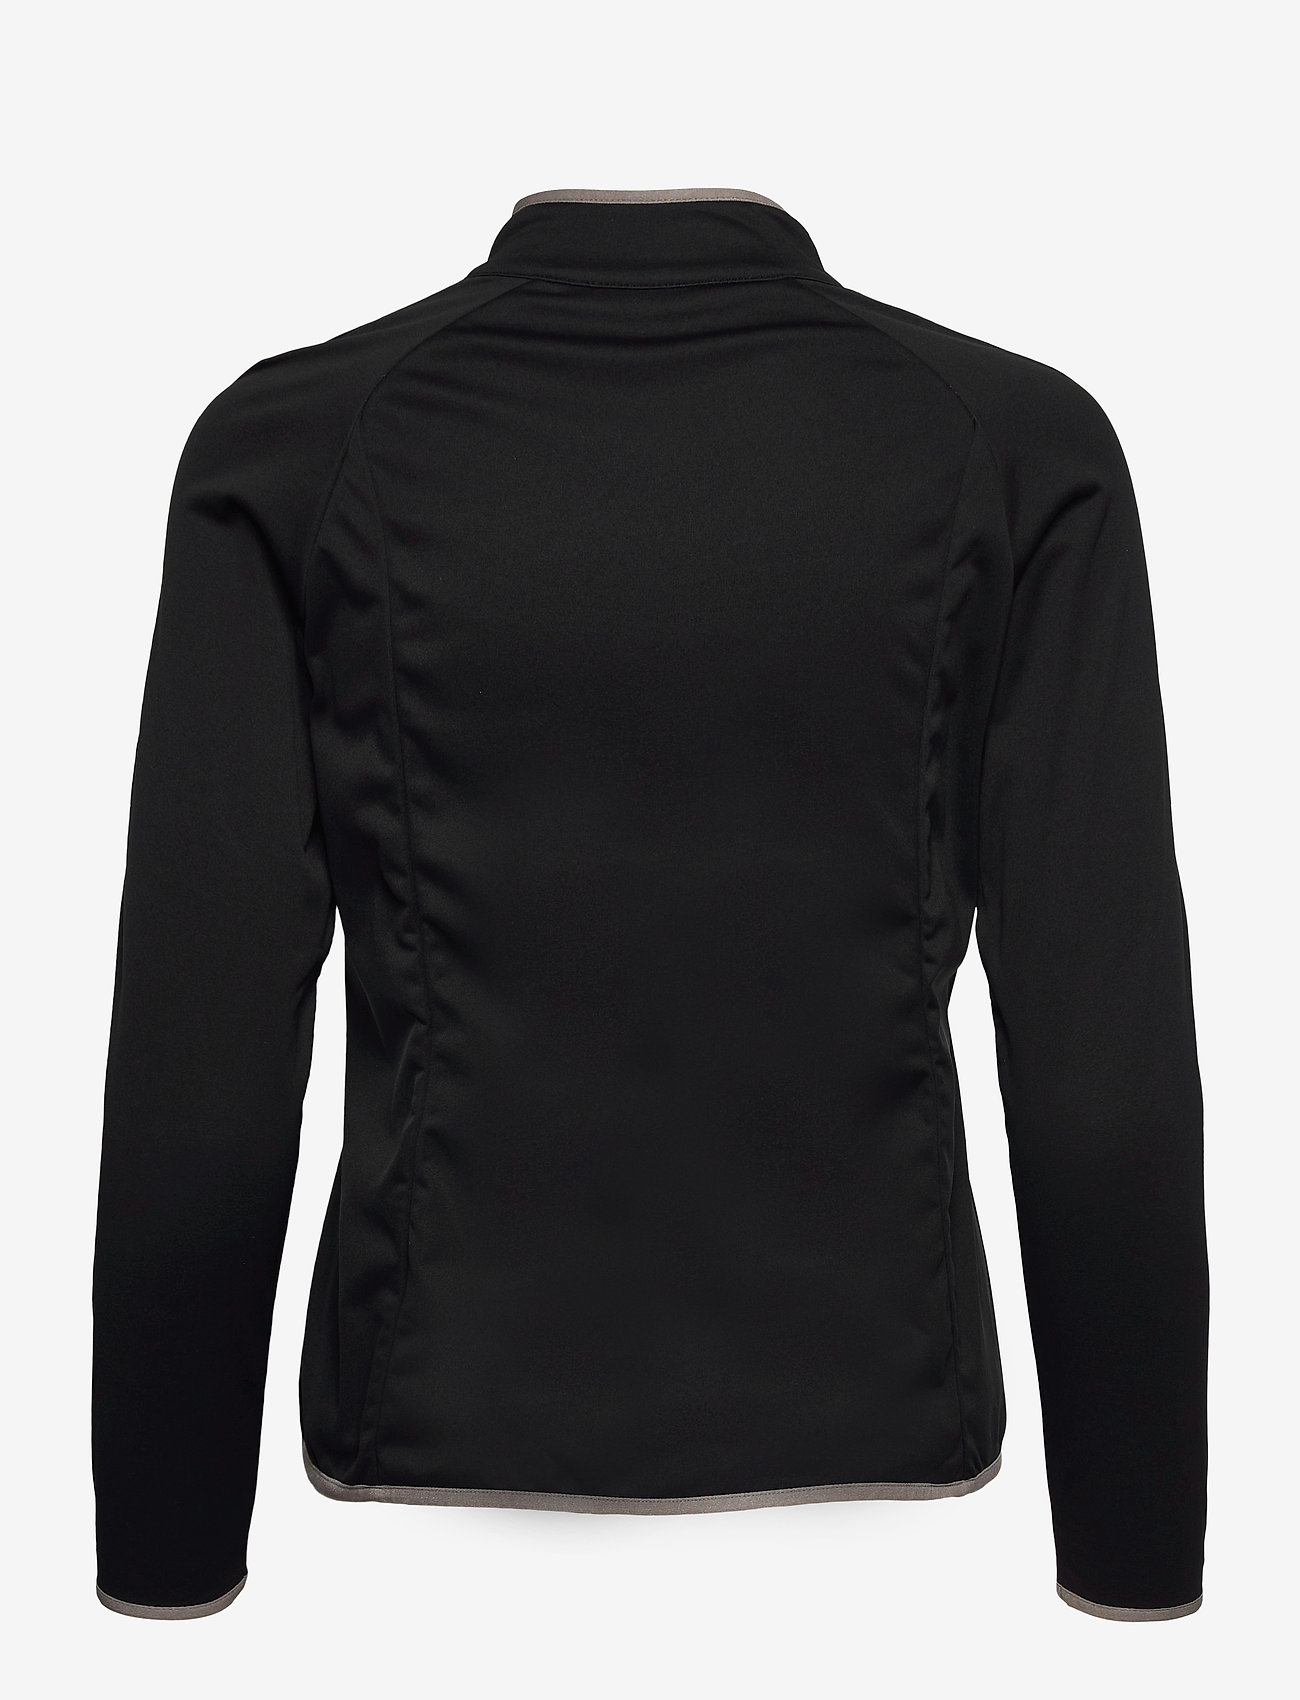 Röhnisch - Hybrid jacket - black - 1